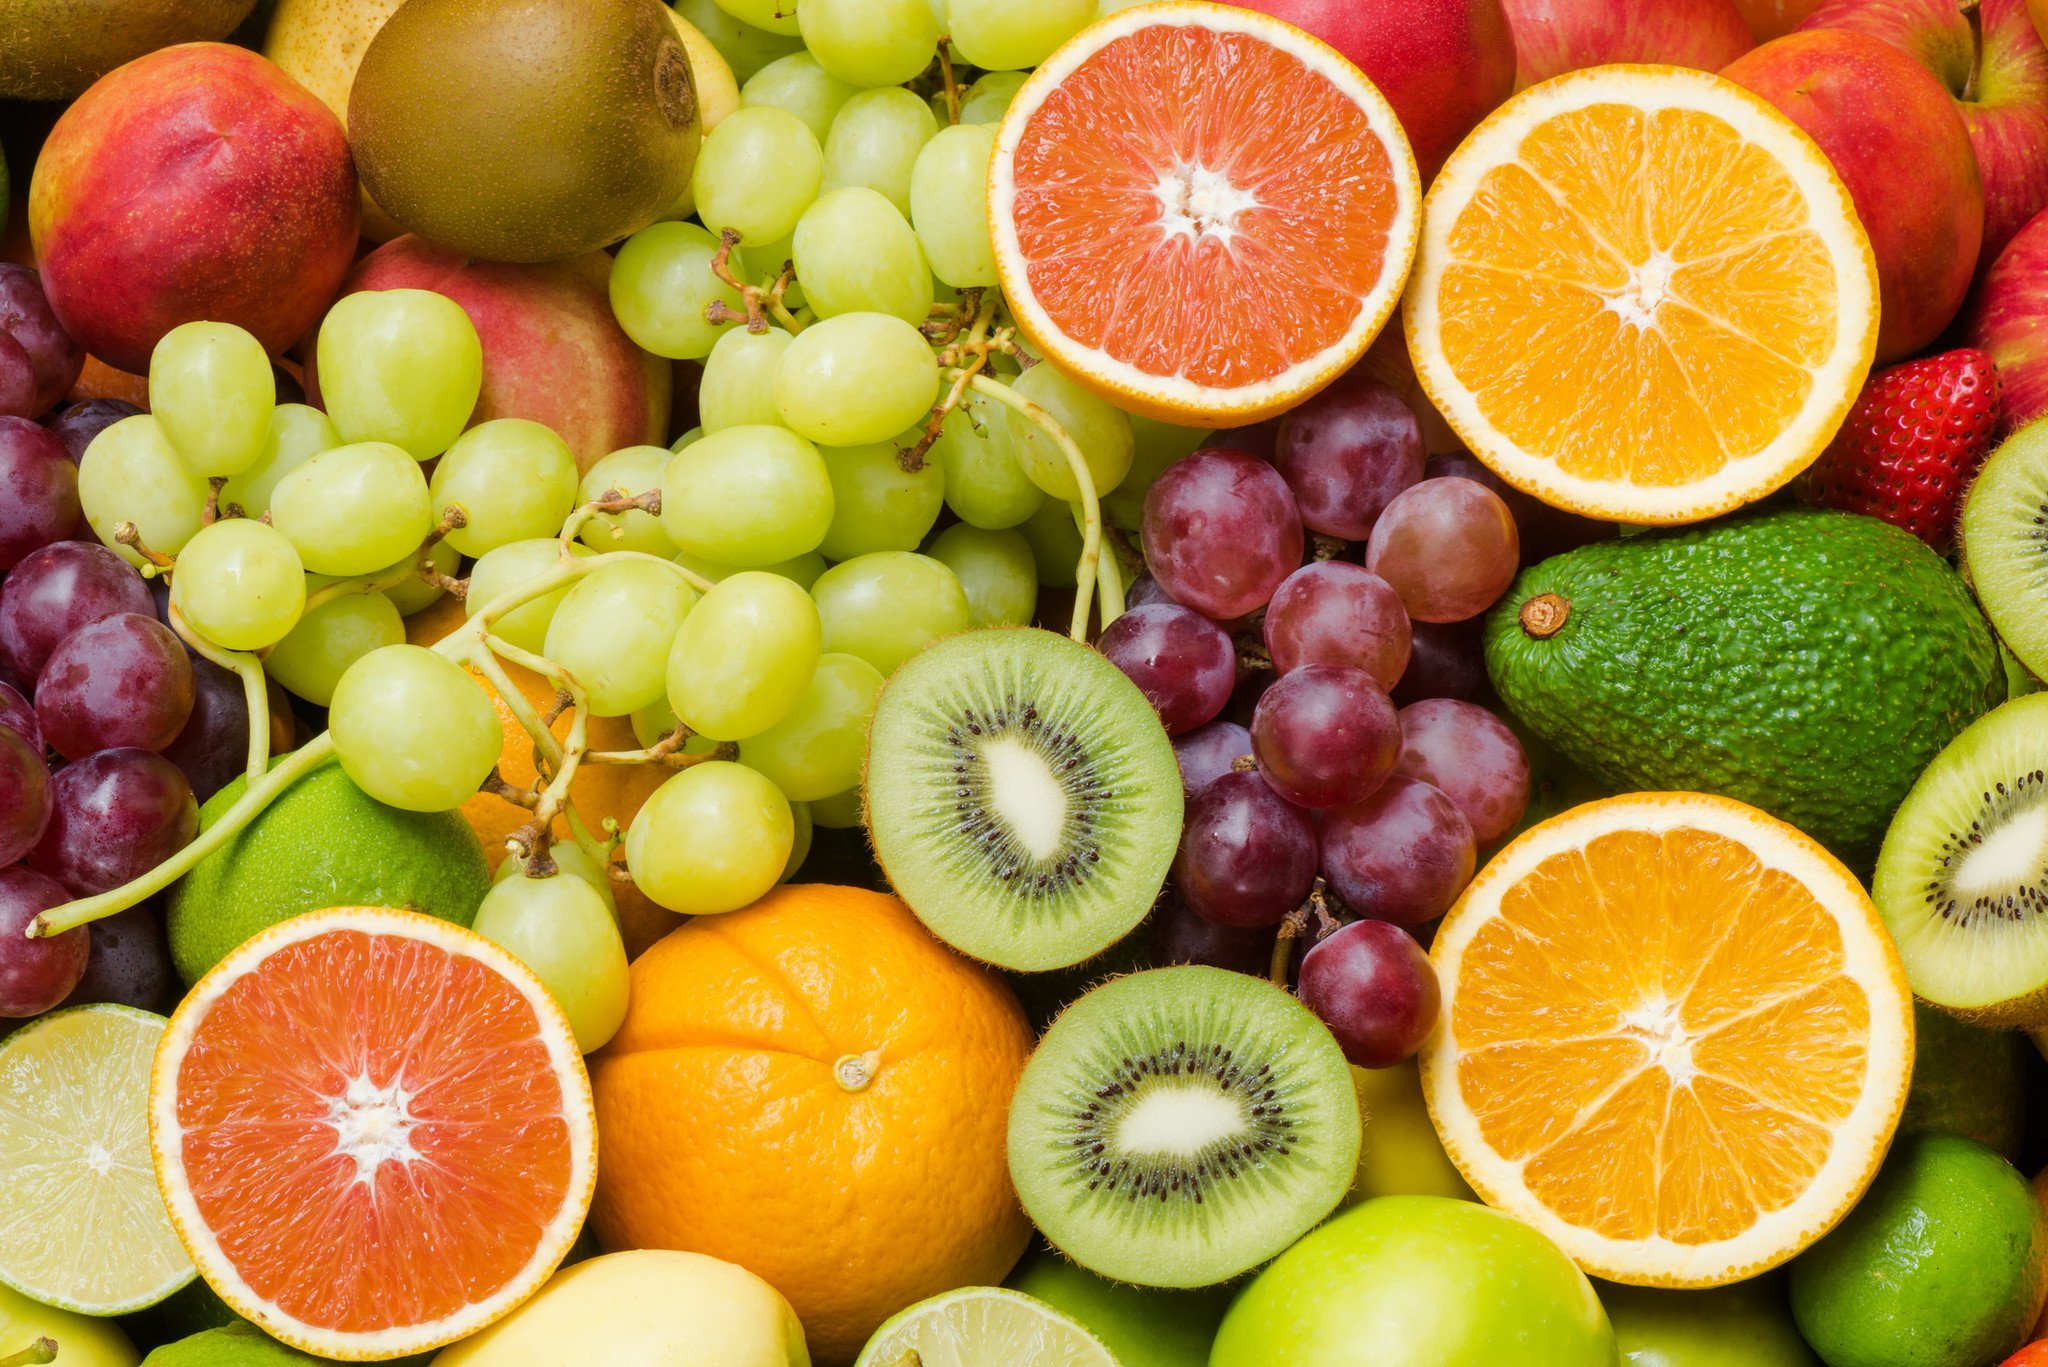 Tìm kiếm được nguồn hàng chất lượng với đa dạng chủng loại trái cây